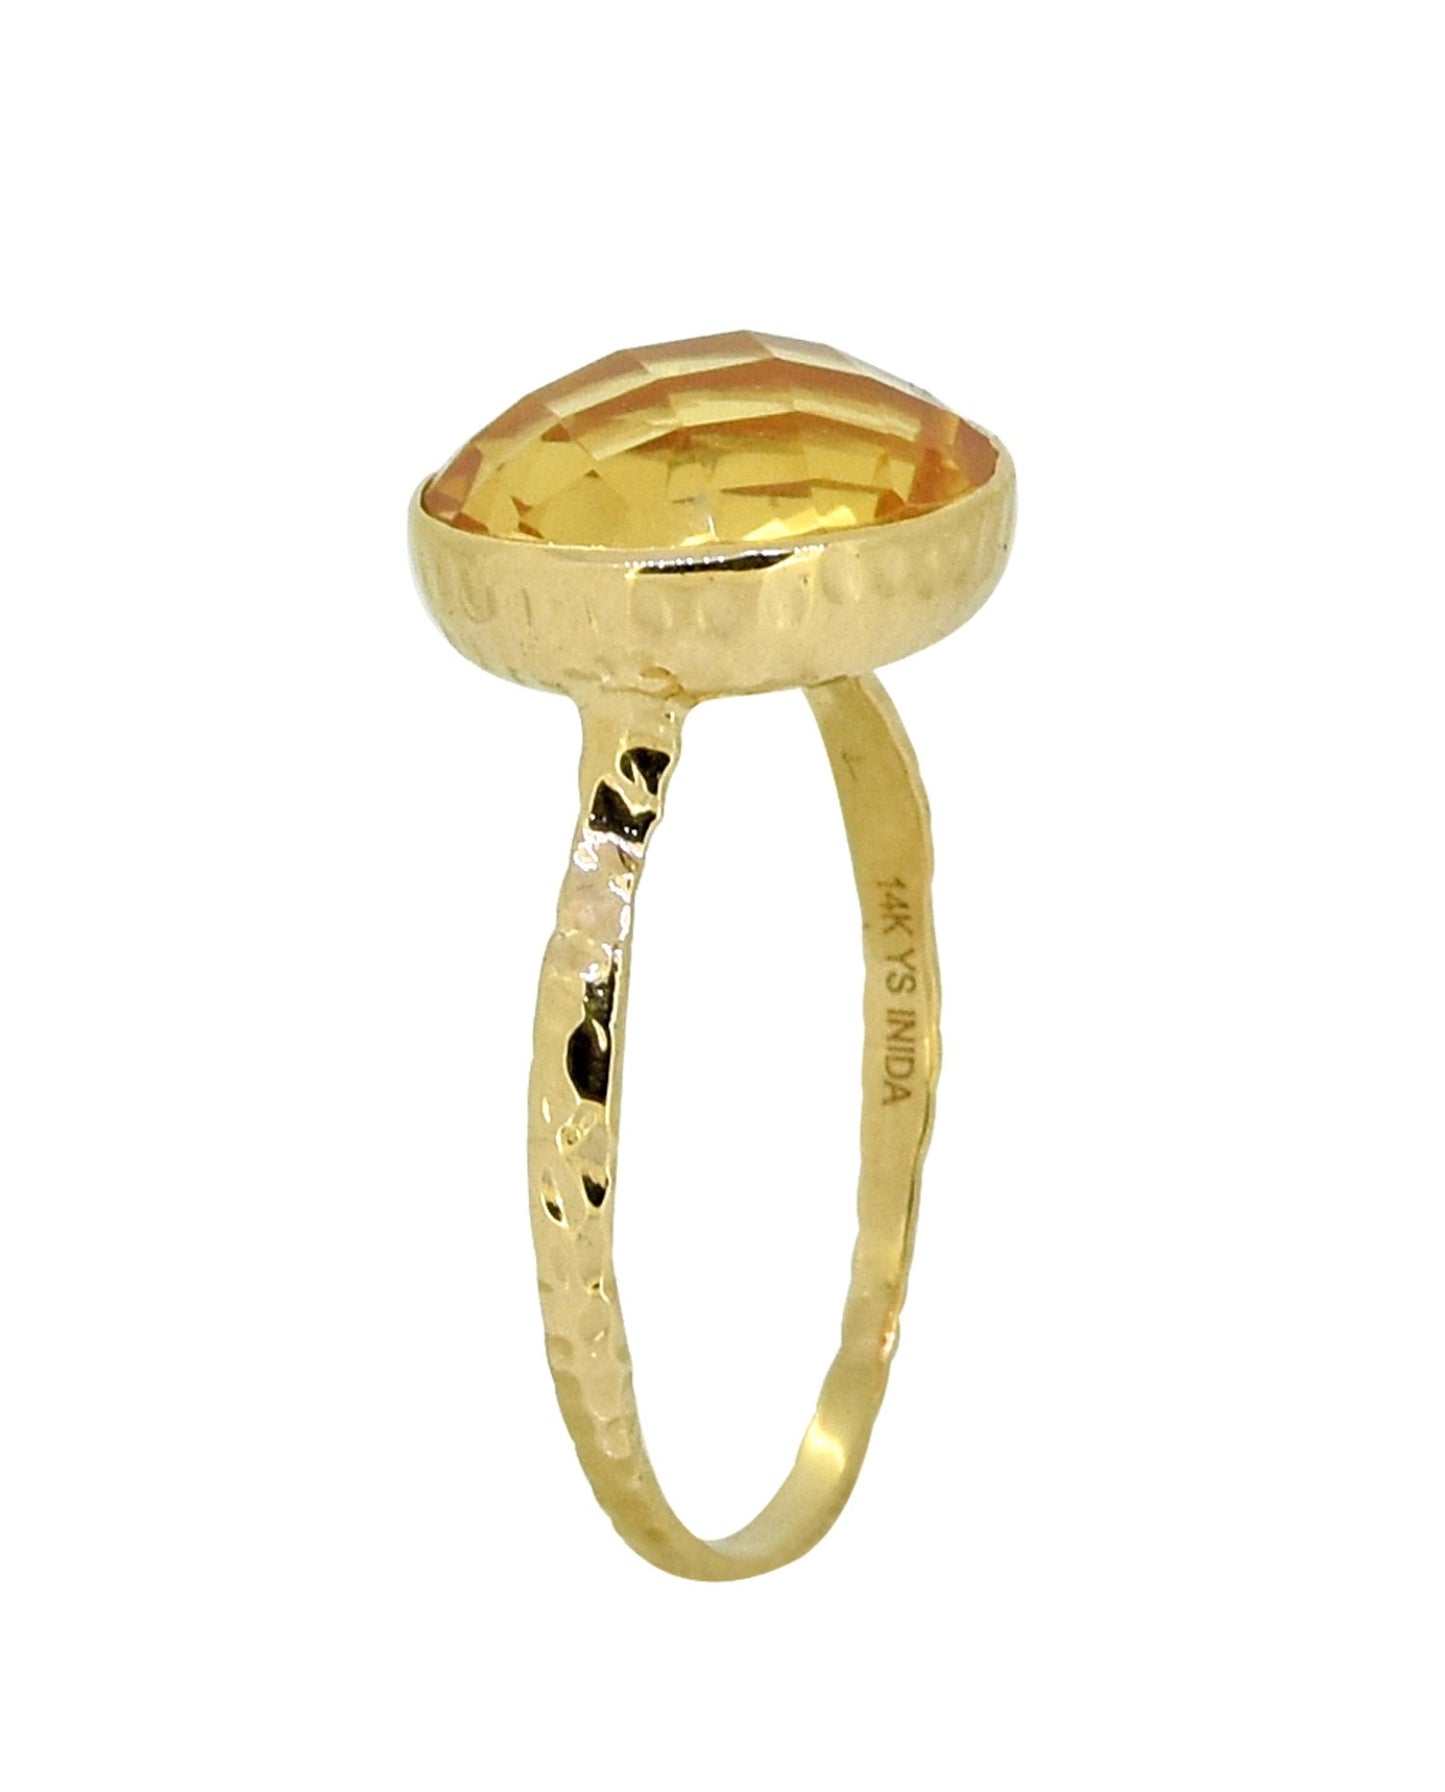 Tiramisu Solid 14k Yellow Gold Citrine Ring (5.60 ct)